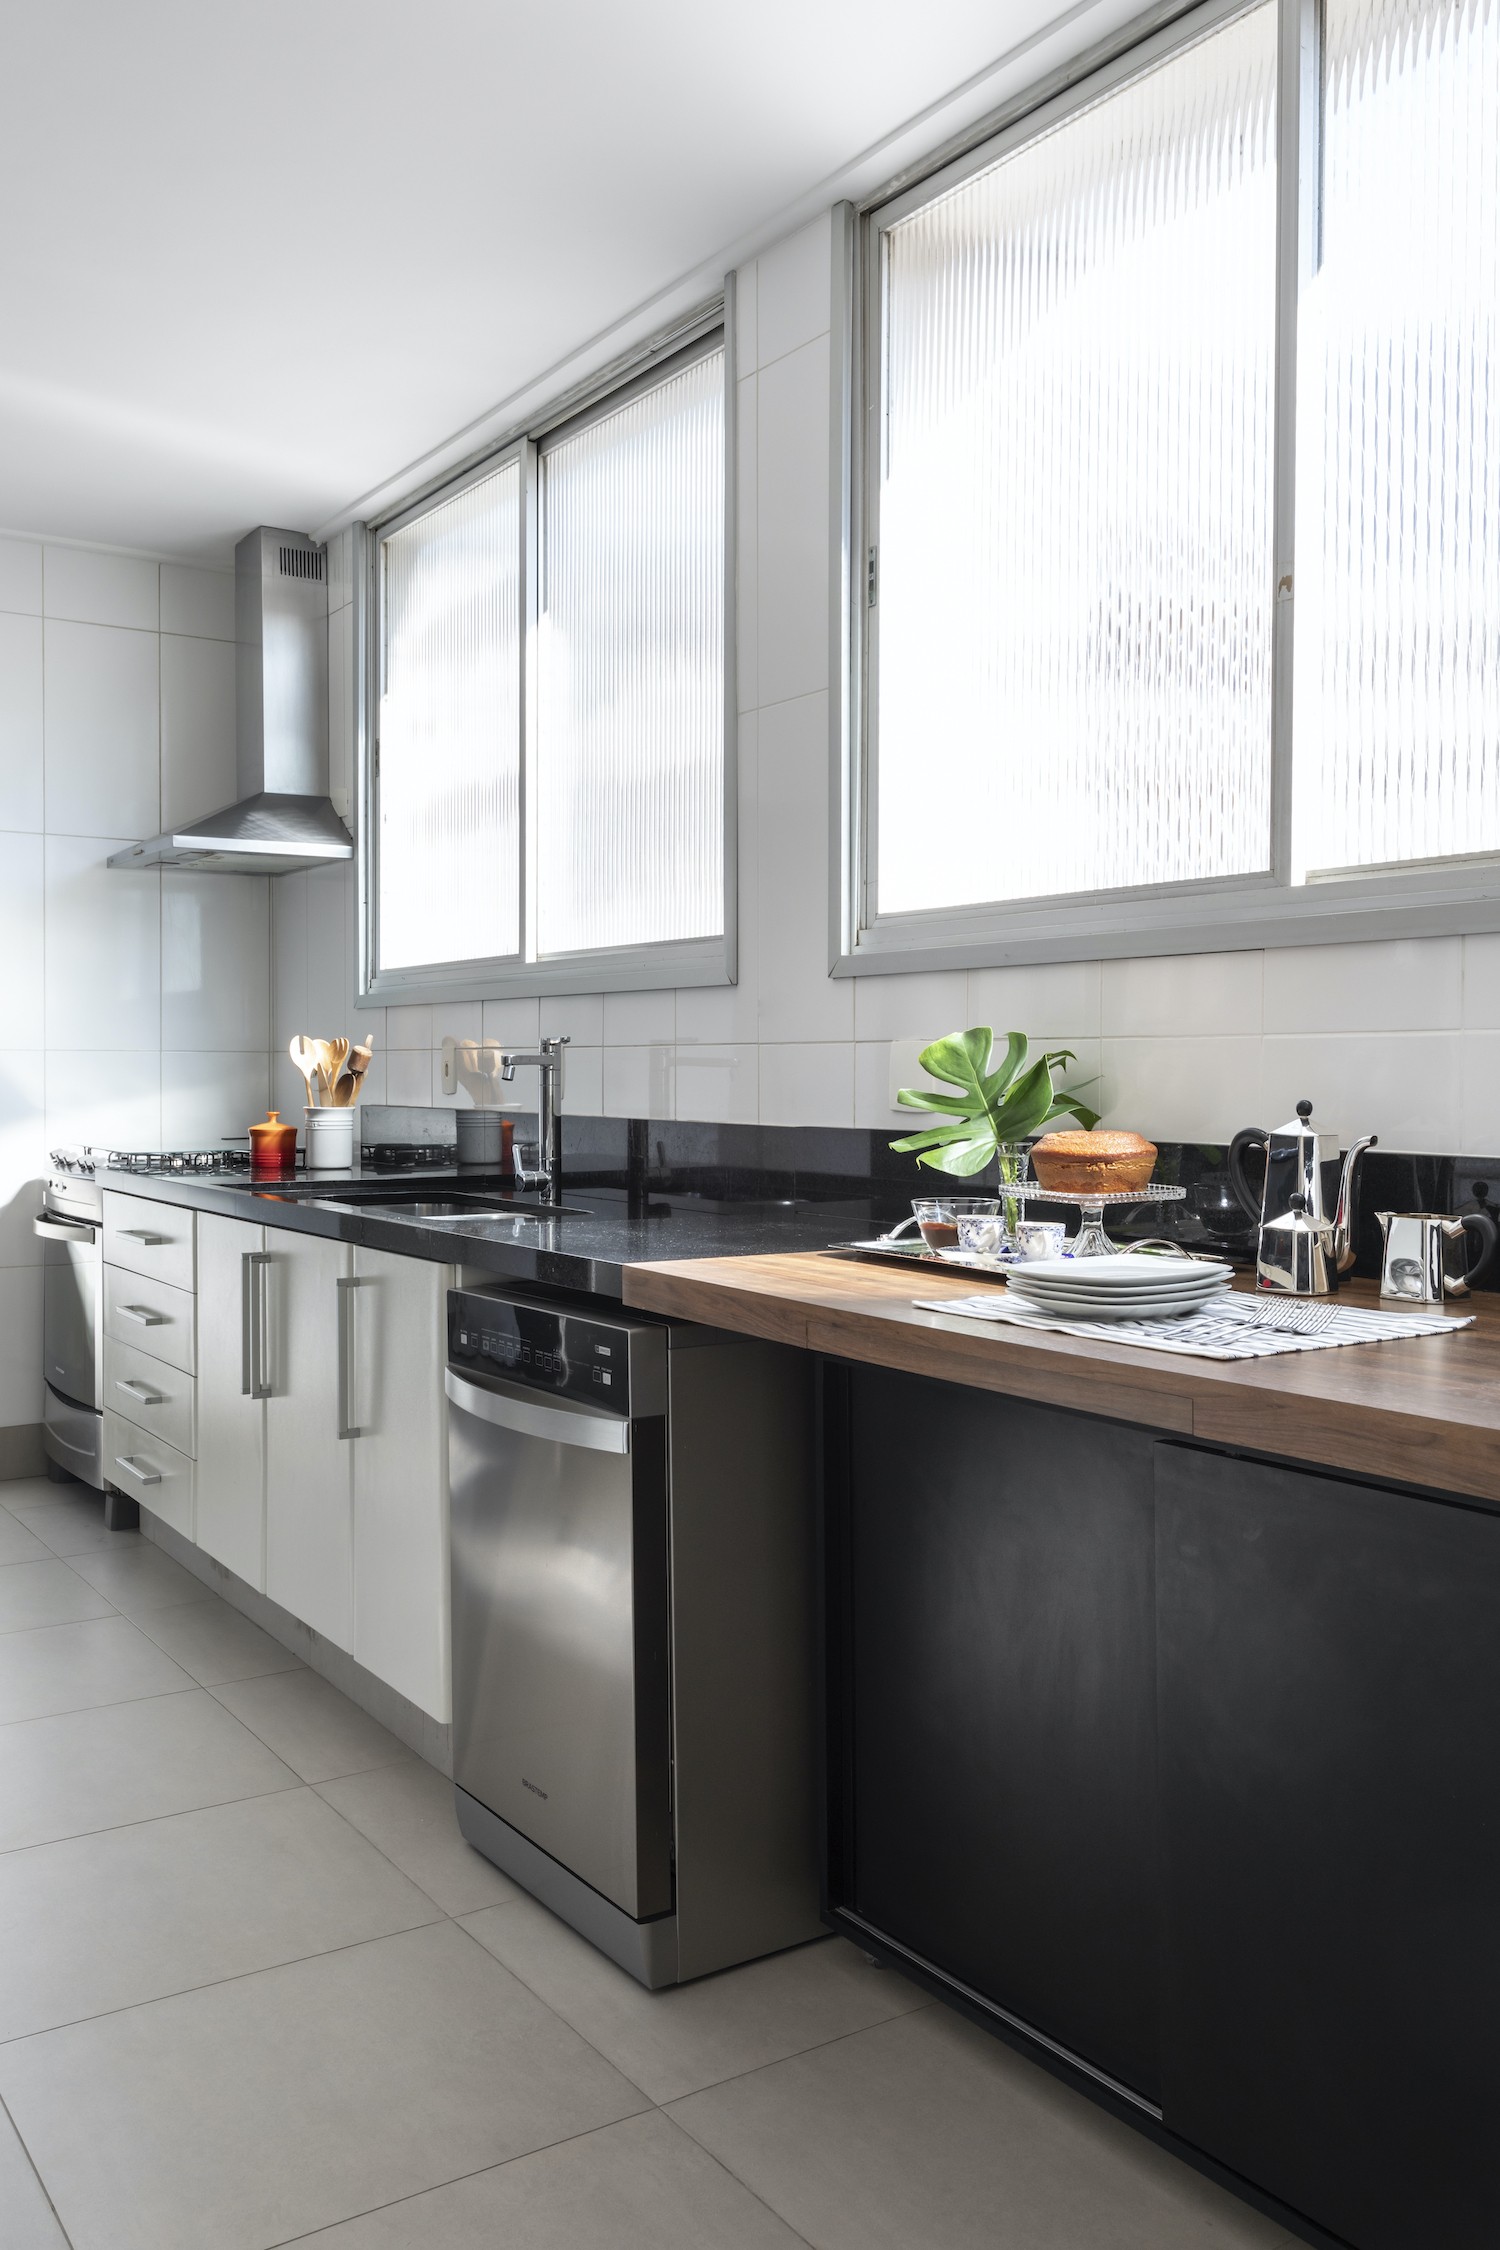 COZINHA | Na cozinha, as grandes janelas permitem que a iluminação natural adentre o espaço (Foto: Divulgação / Evelyn Müller)